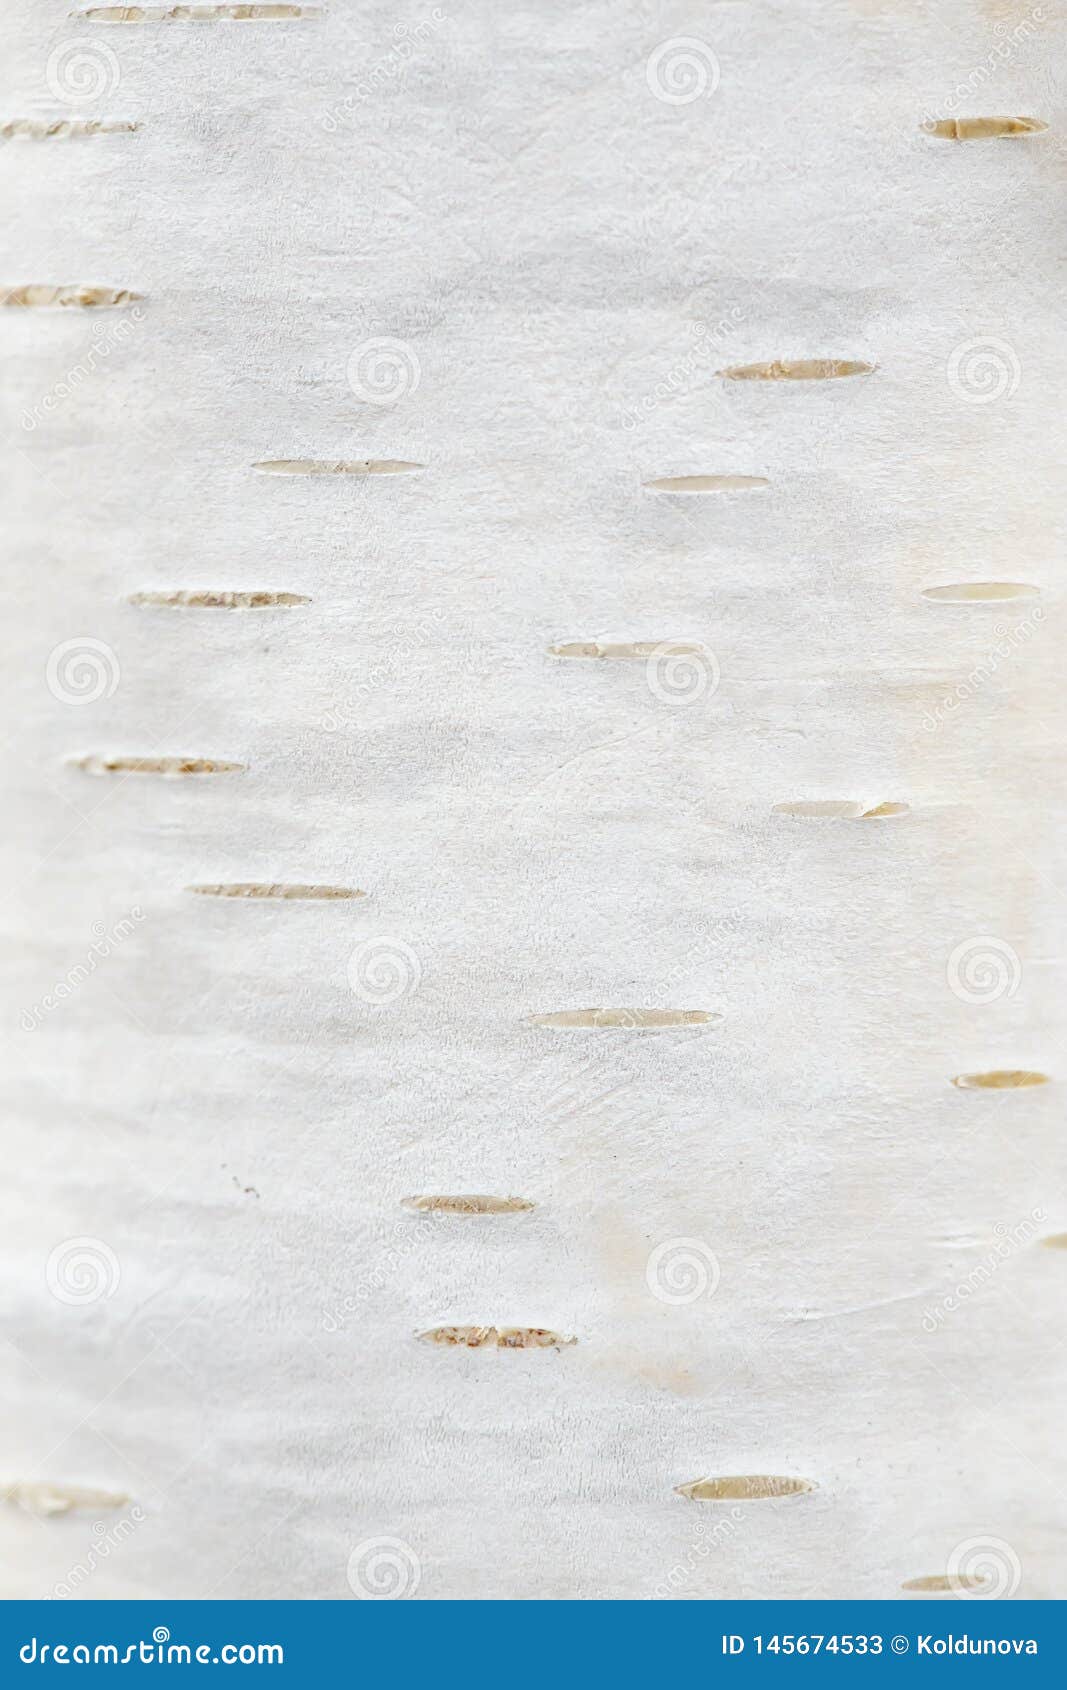 BW3963  White  Beige  Silver Birch Bark Modern Wood Texture Wallpaper